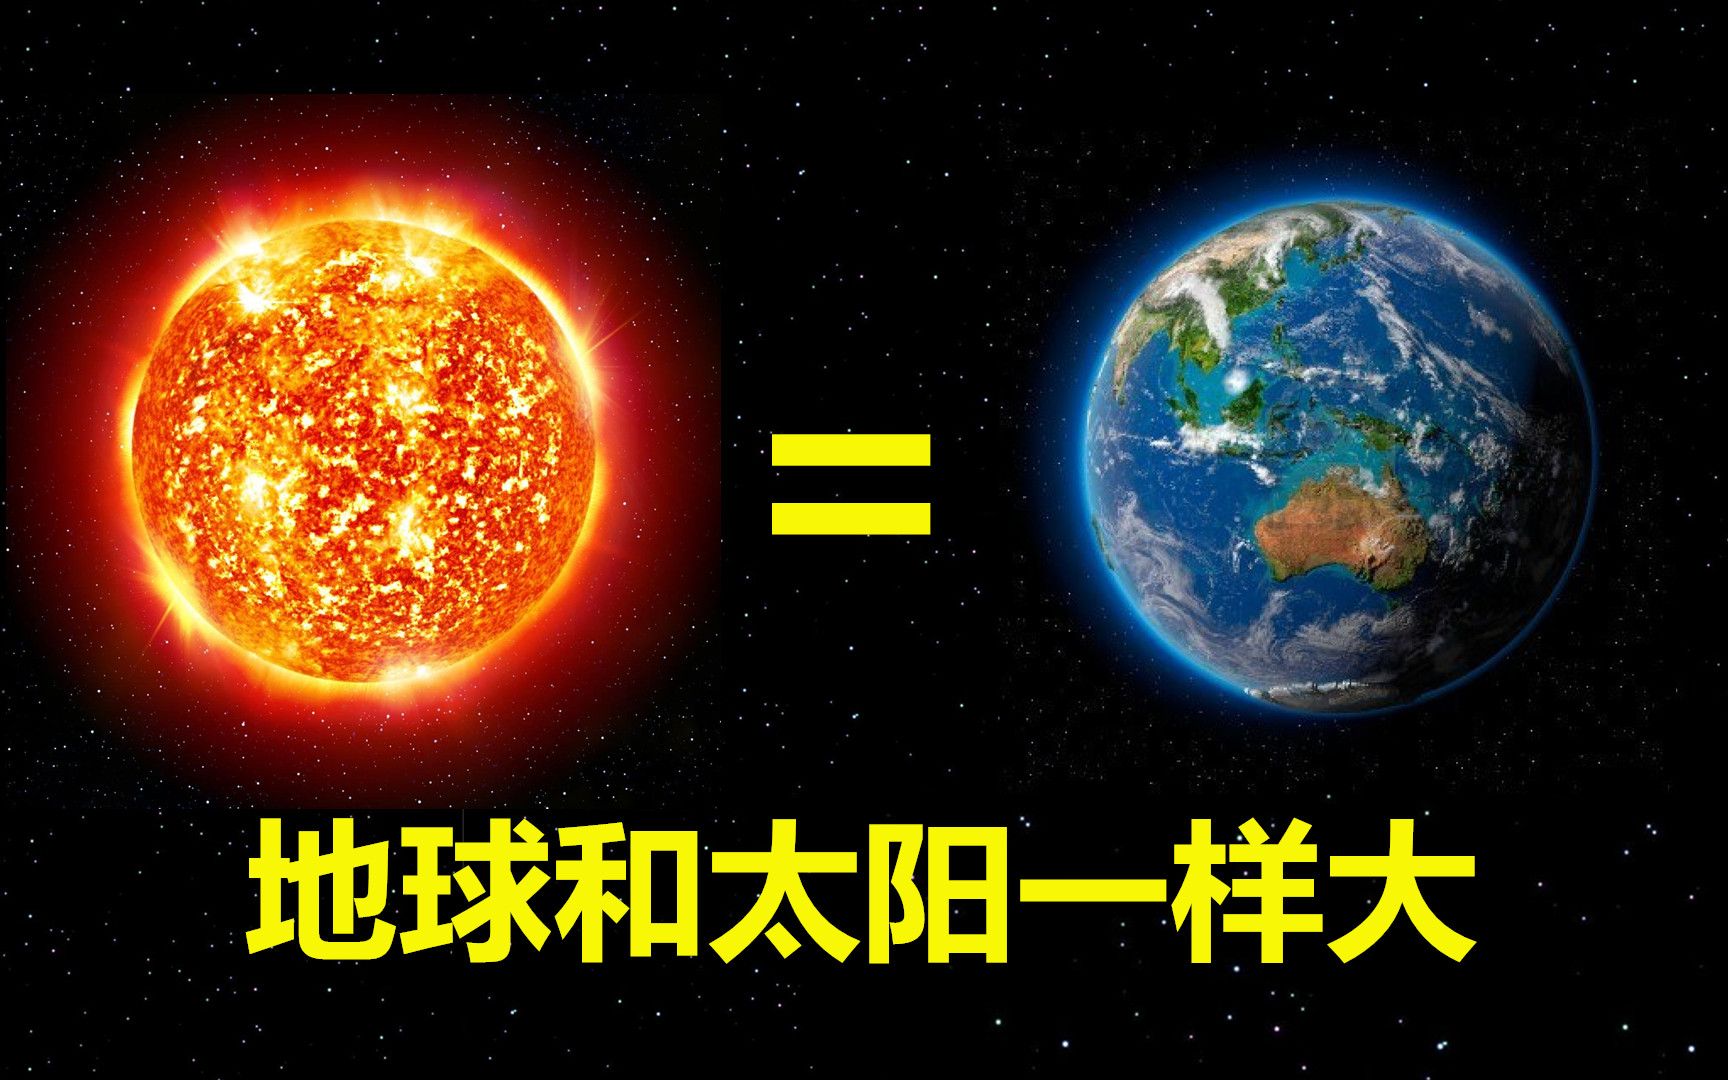 太阳地球大小对比照片图片